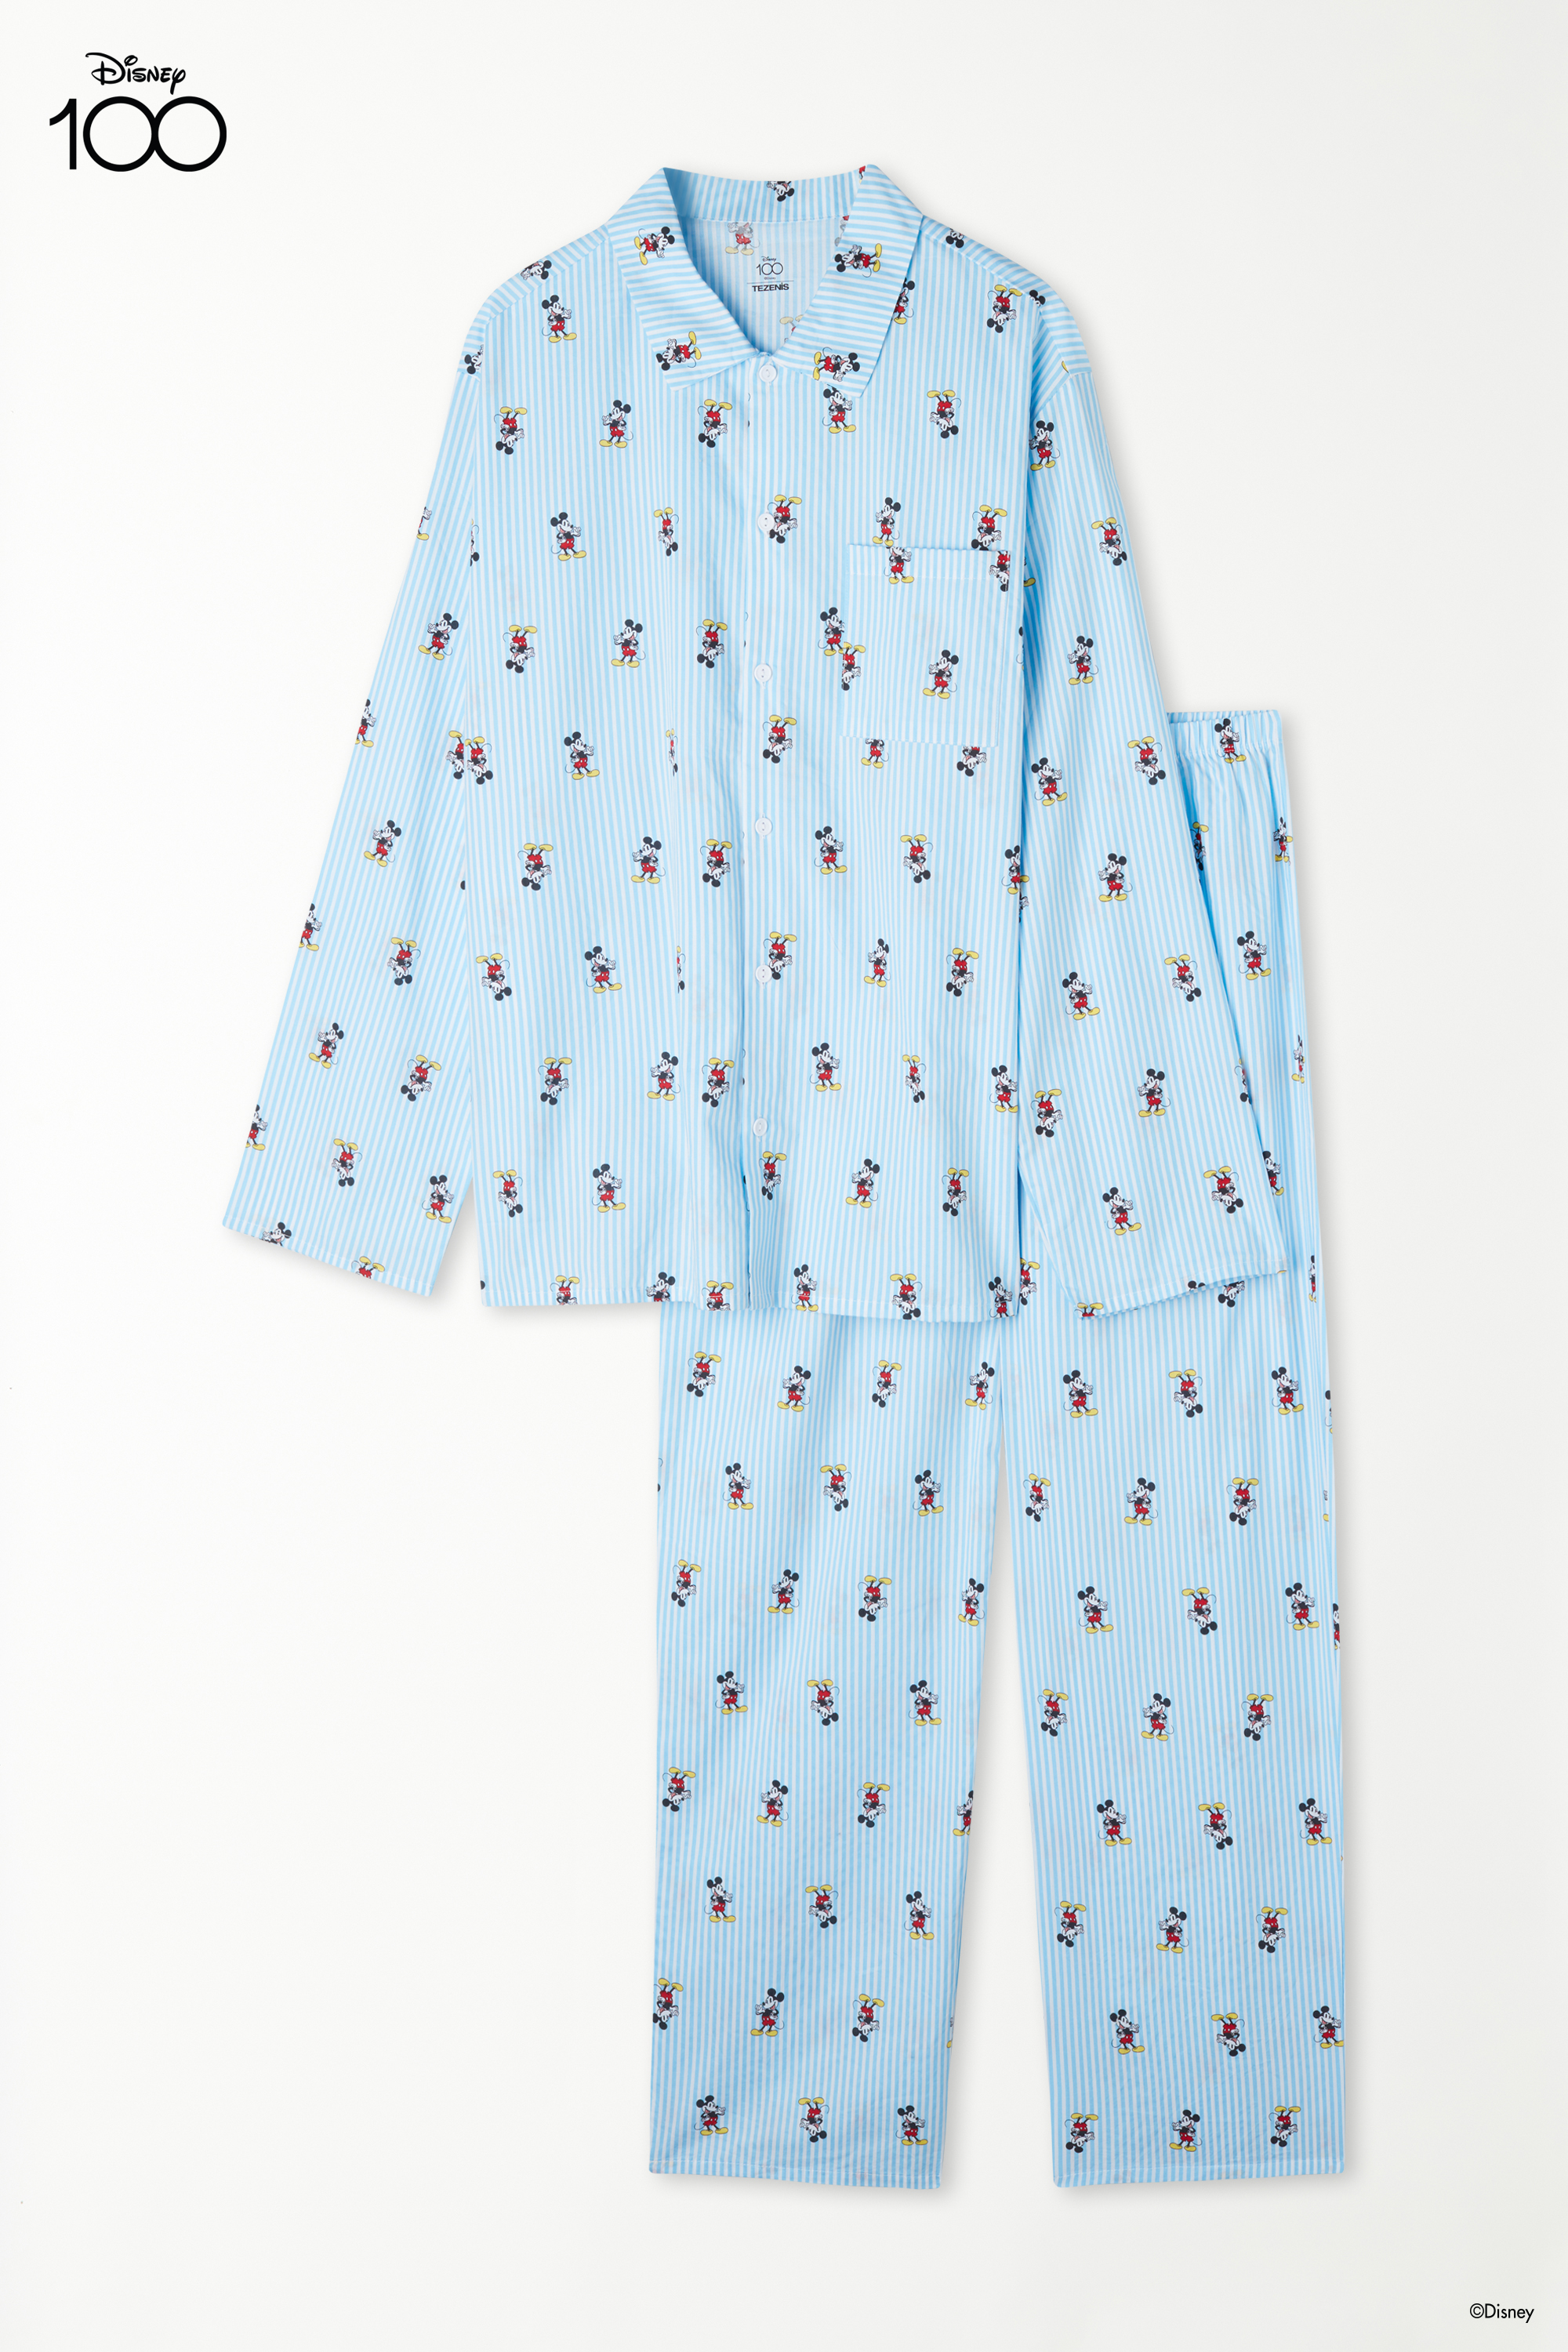 Langer Pyjama mit Knopfleiste aus Baumwolltuch mit Disney 100-Print